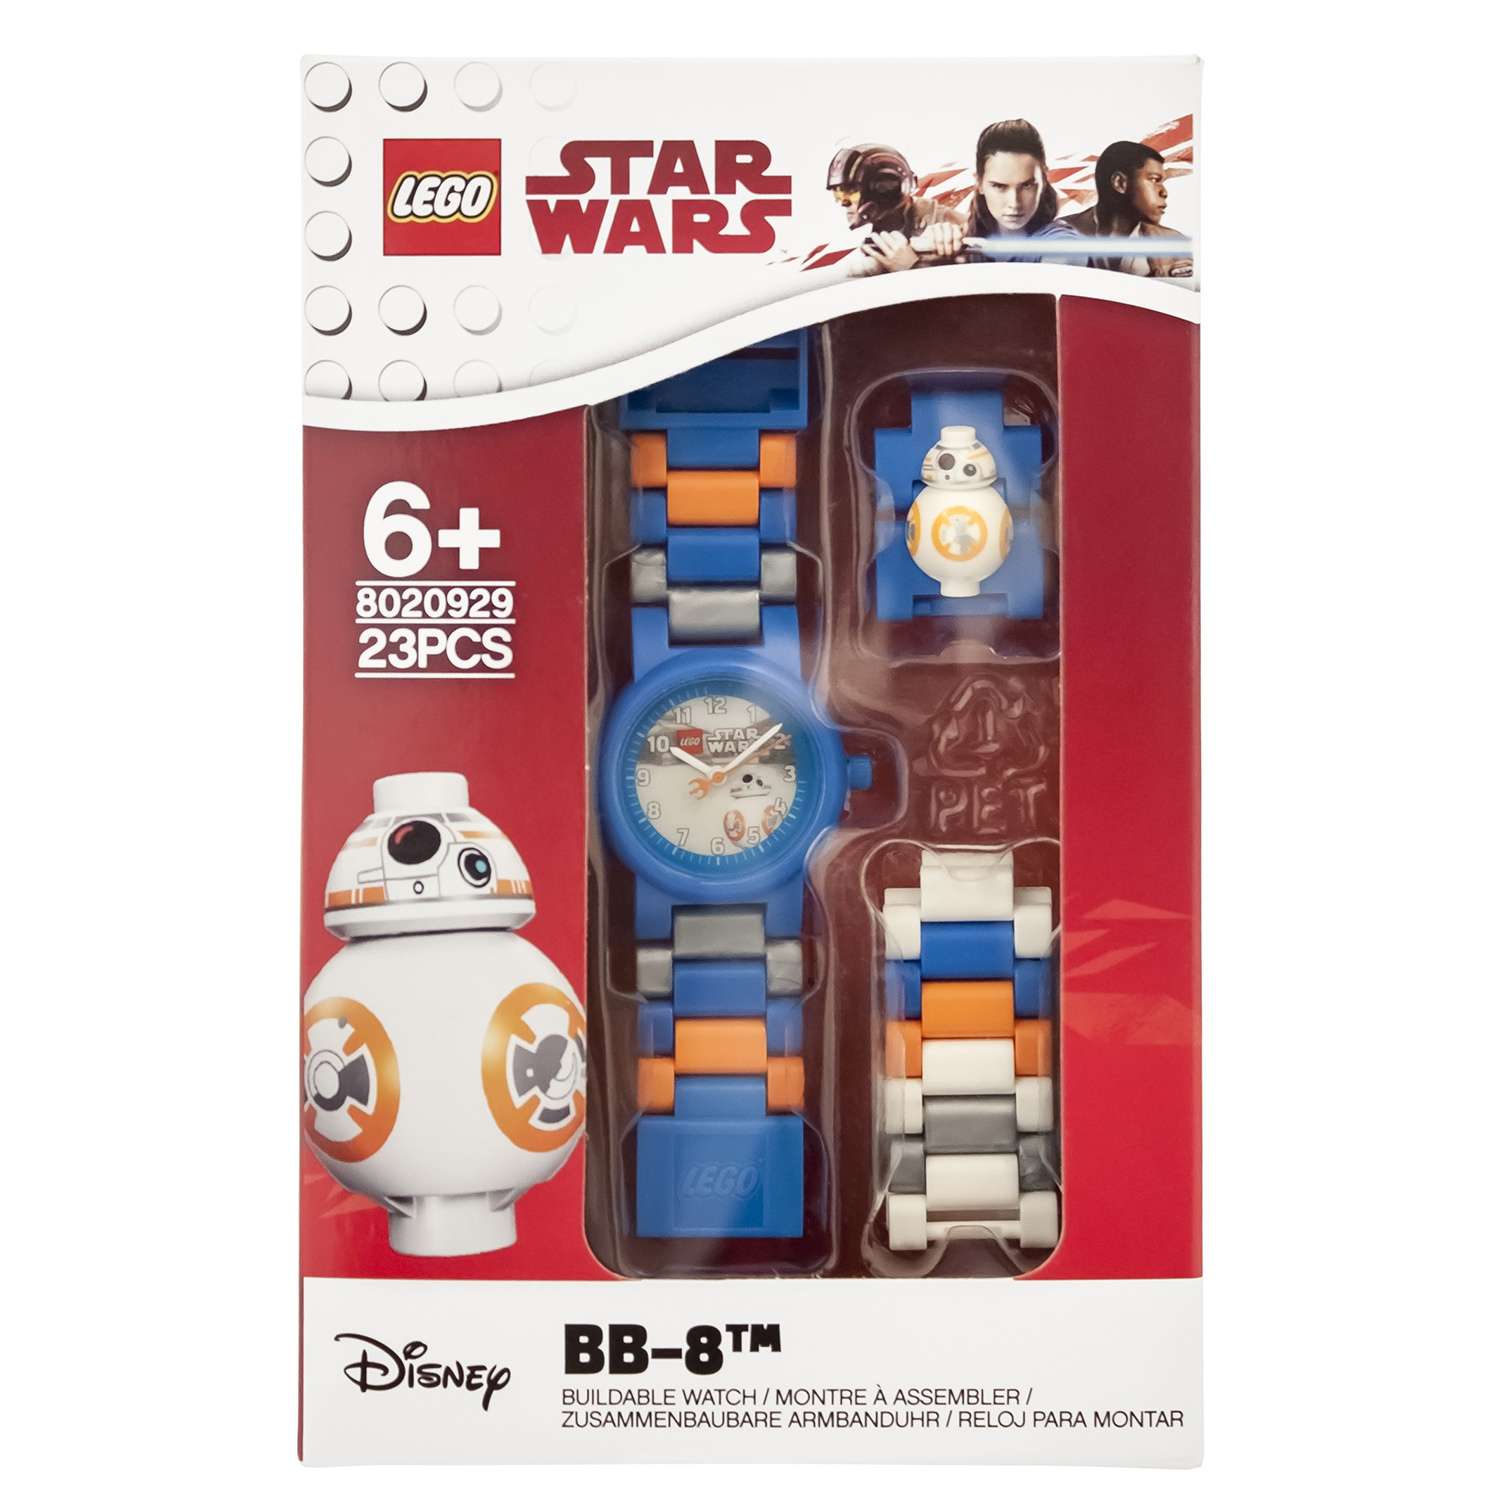 Аксессуар LEGO Star Wars Episode 7 Часы наручные аналоговые с минифигурой BB-8 на ремешке 8020929 - фото 2